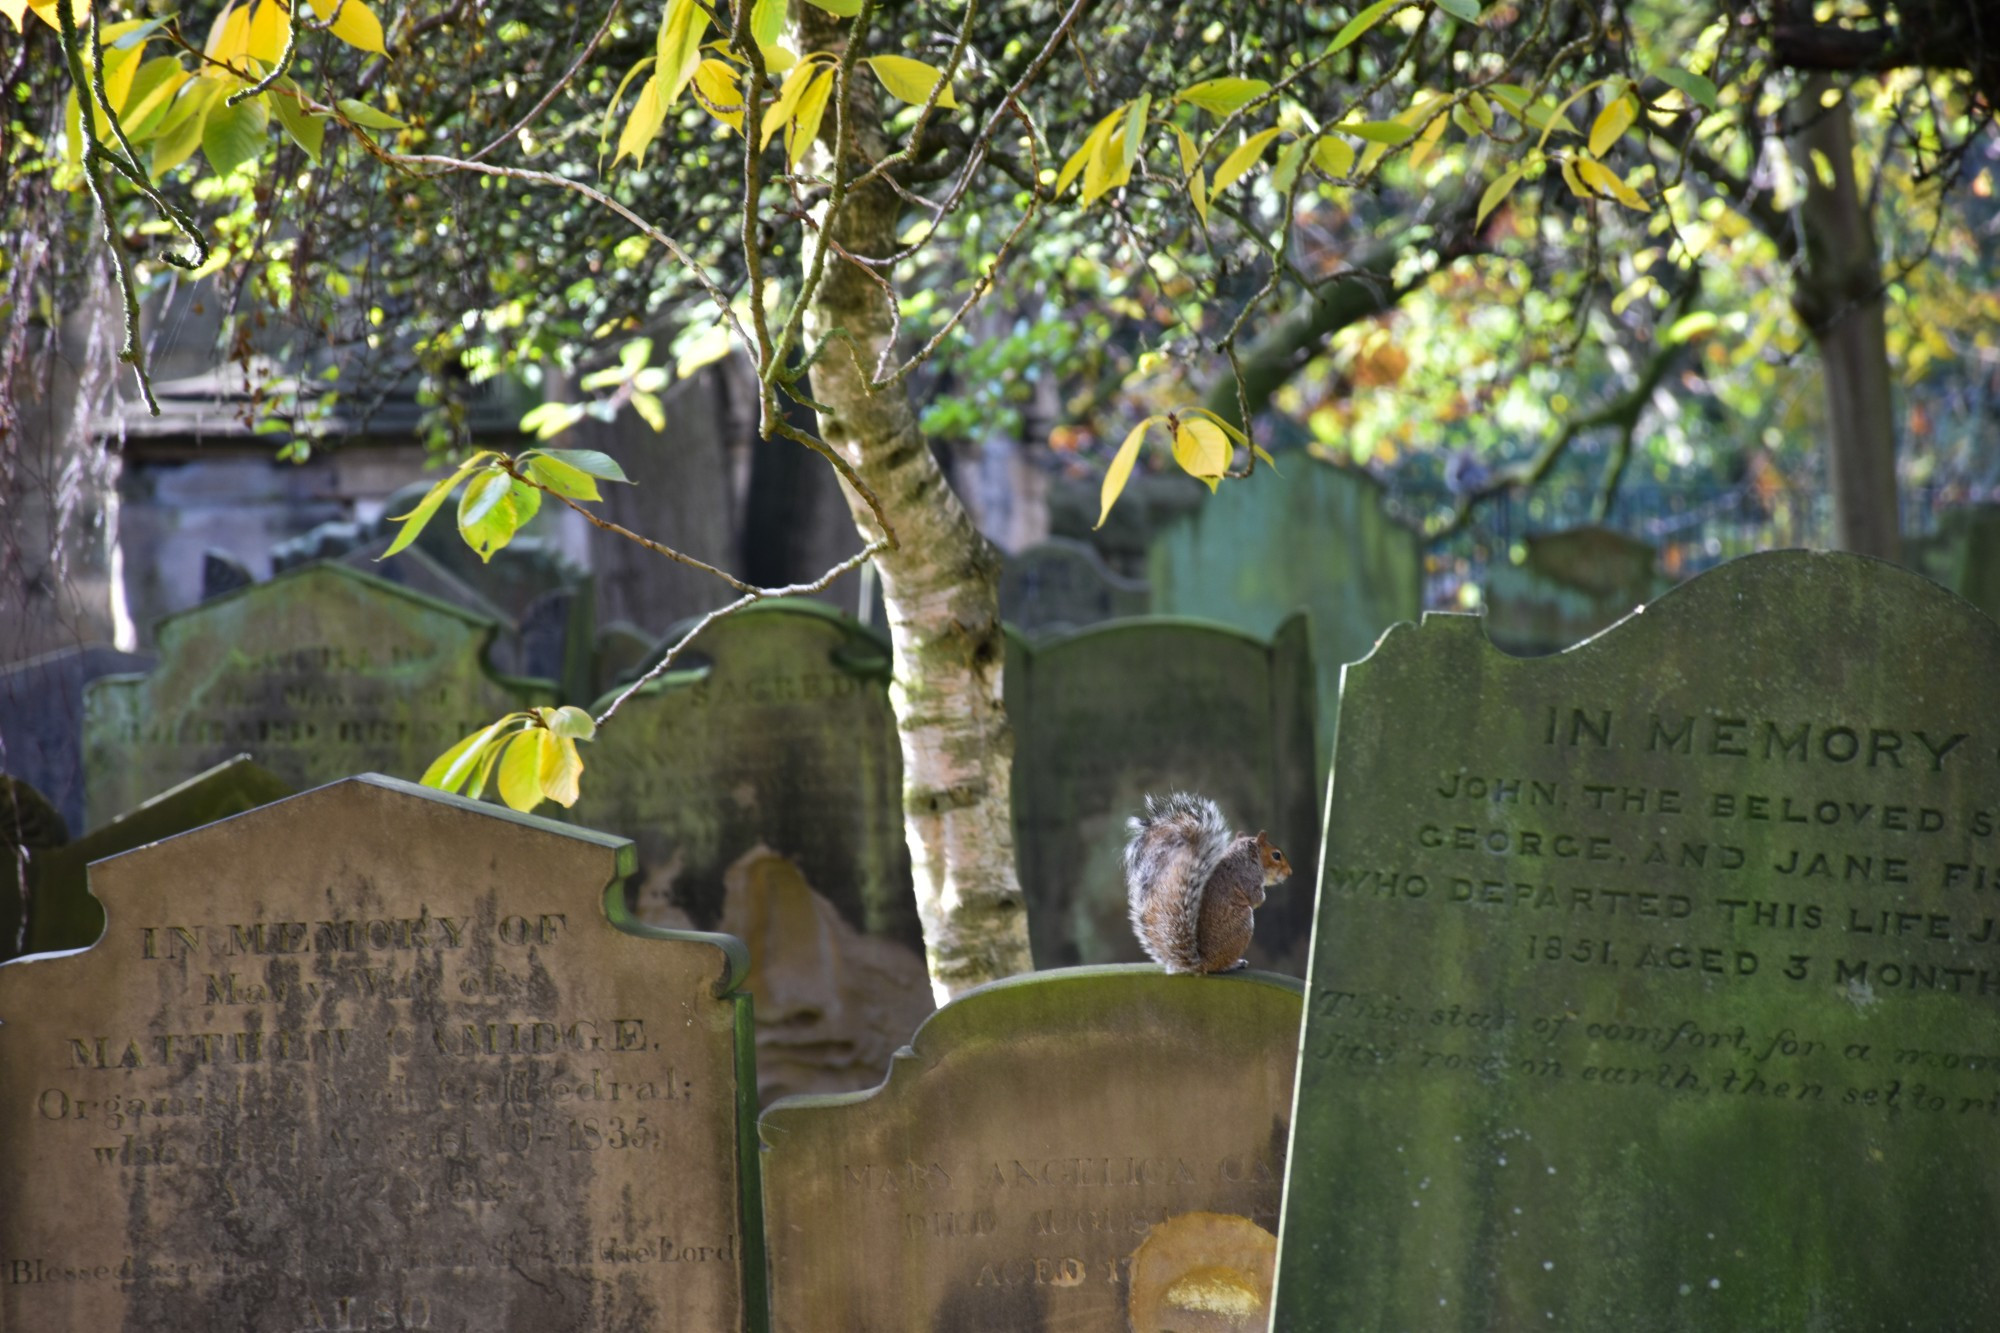 A squirrel at the cemetery: an unexpected visit<br/> <br/>
Uno scoiattolo al cimitero: una visita inaspettata